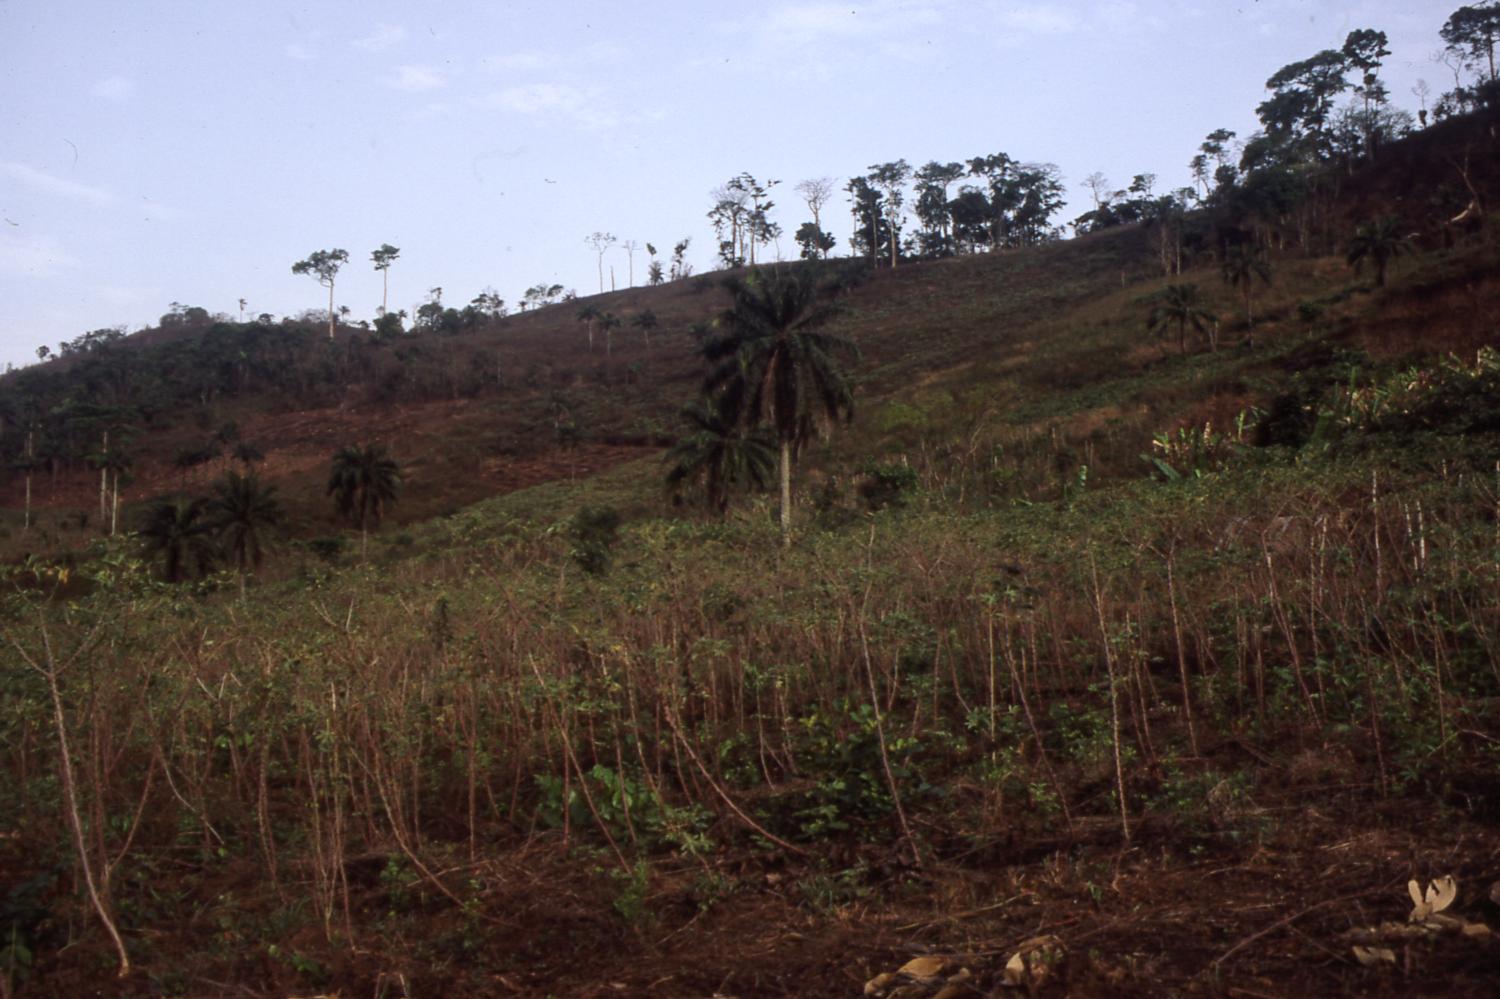 Ilesa land and vegetation